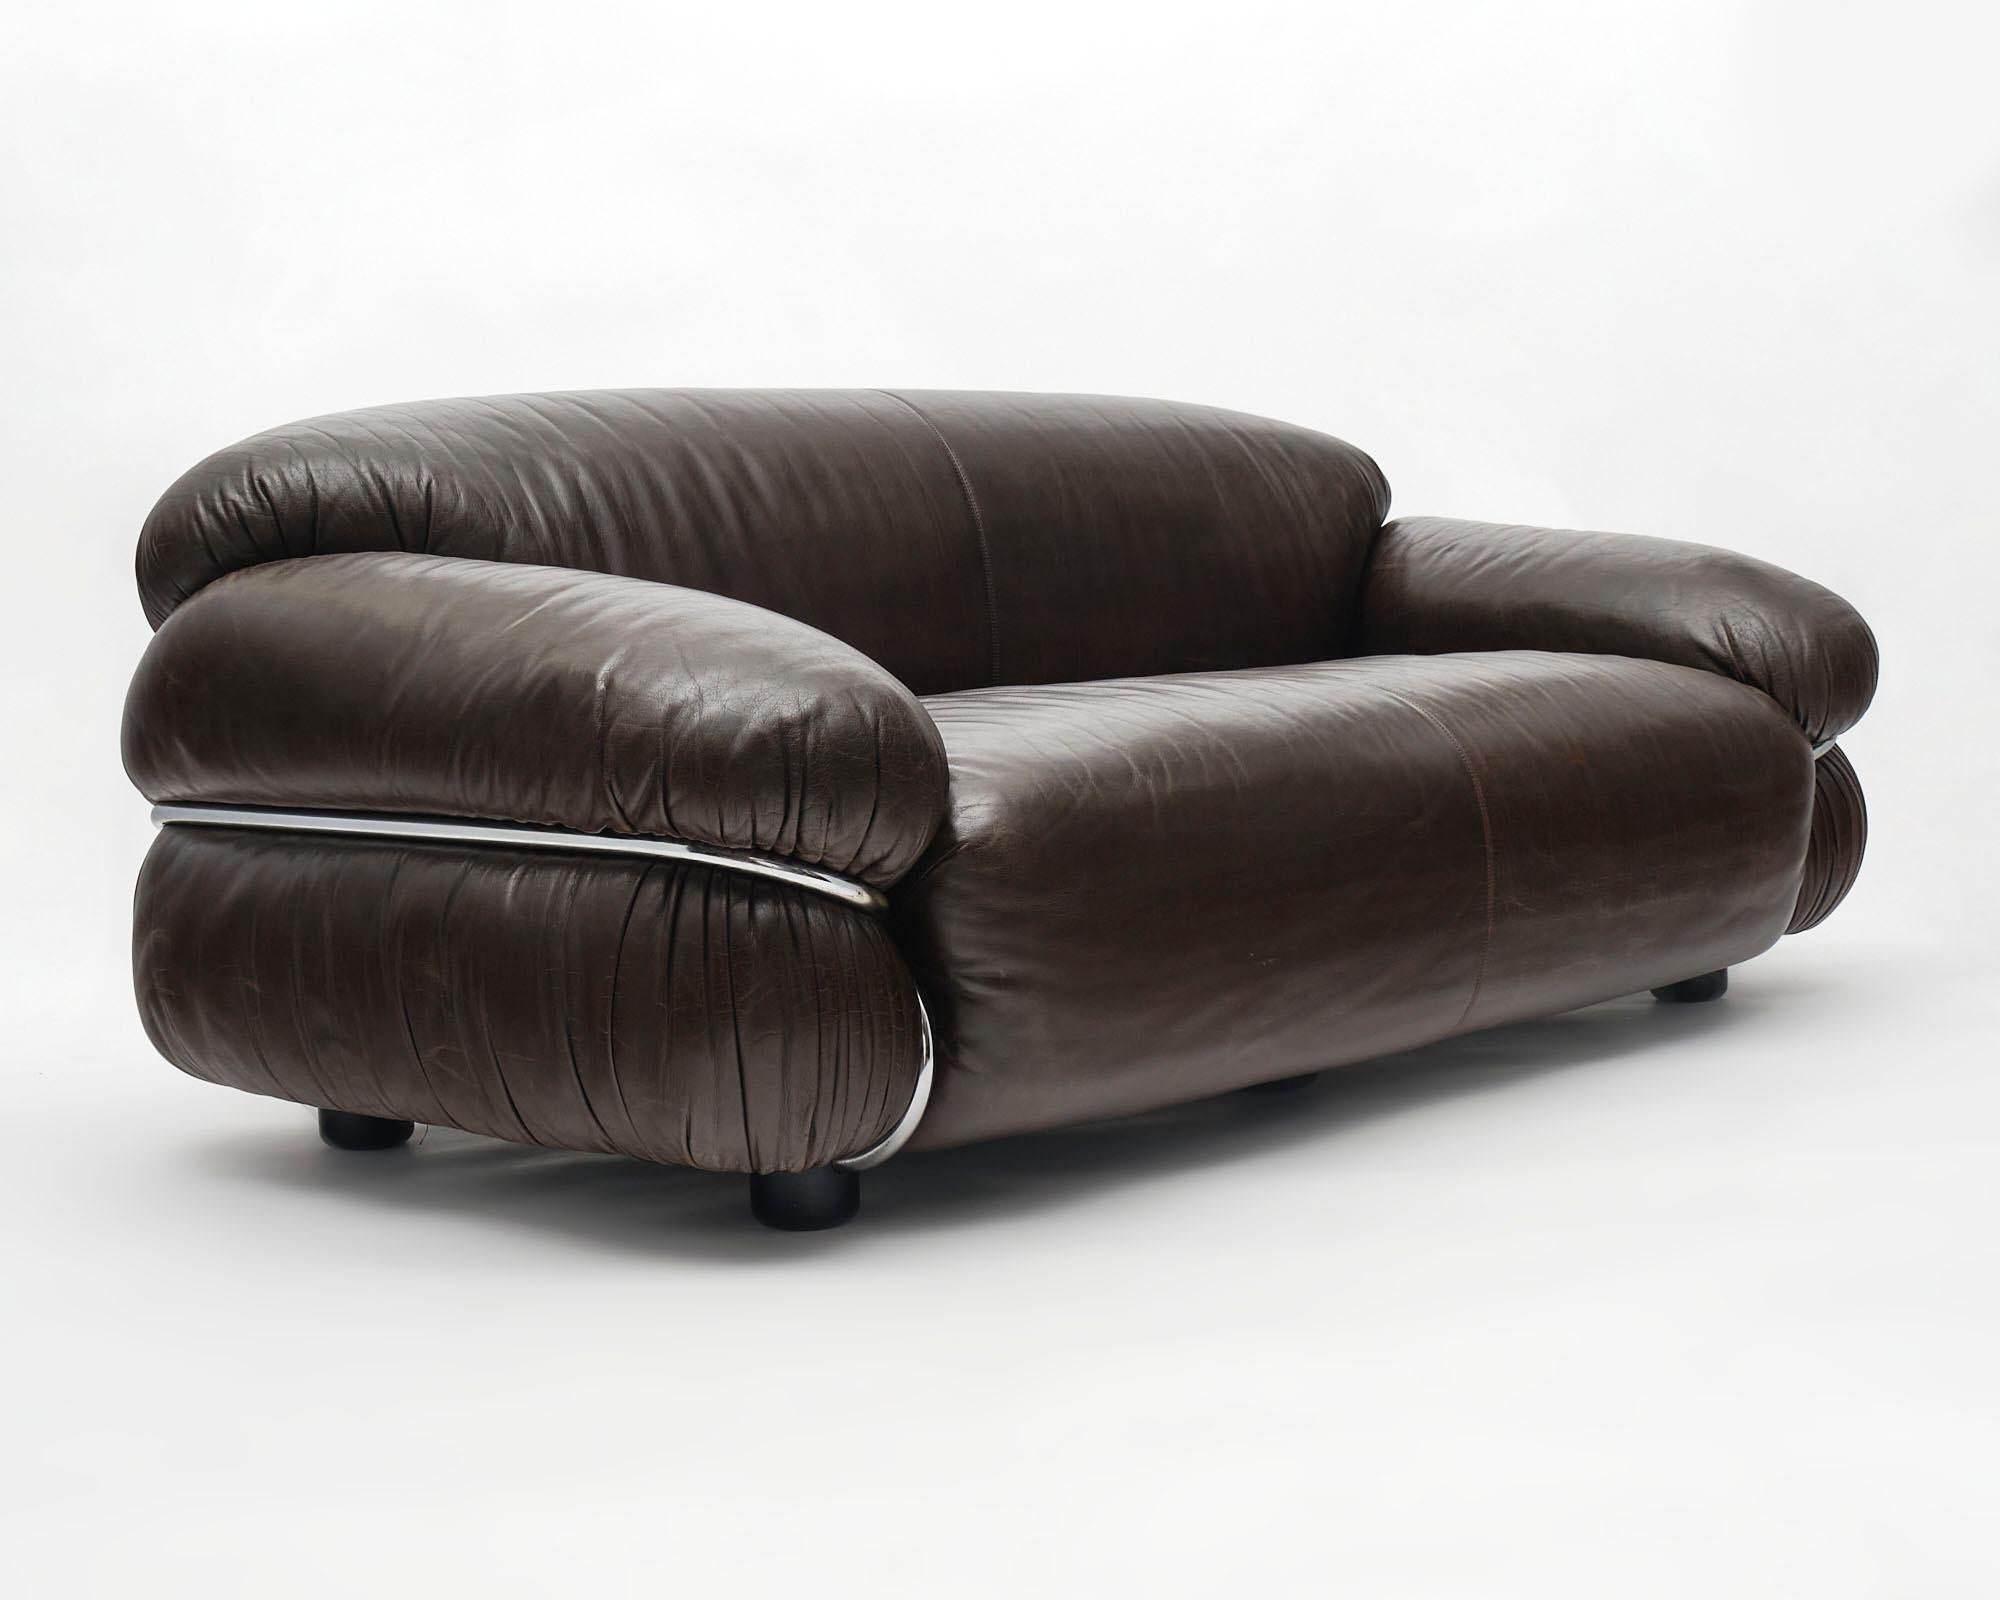 Italienisches Sofa, von Gianfranco Frattini für Cassina. Das geschmeidige, gut erhaltene Leder passt sich der üppigen Form an. Dieses Sofa ruht auf einer gebogenen, verchromten Rohrstruktur, die sich in einem hervorragenden Zustand befindet.